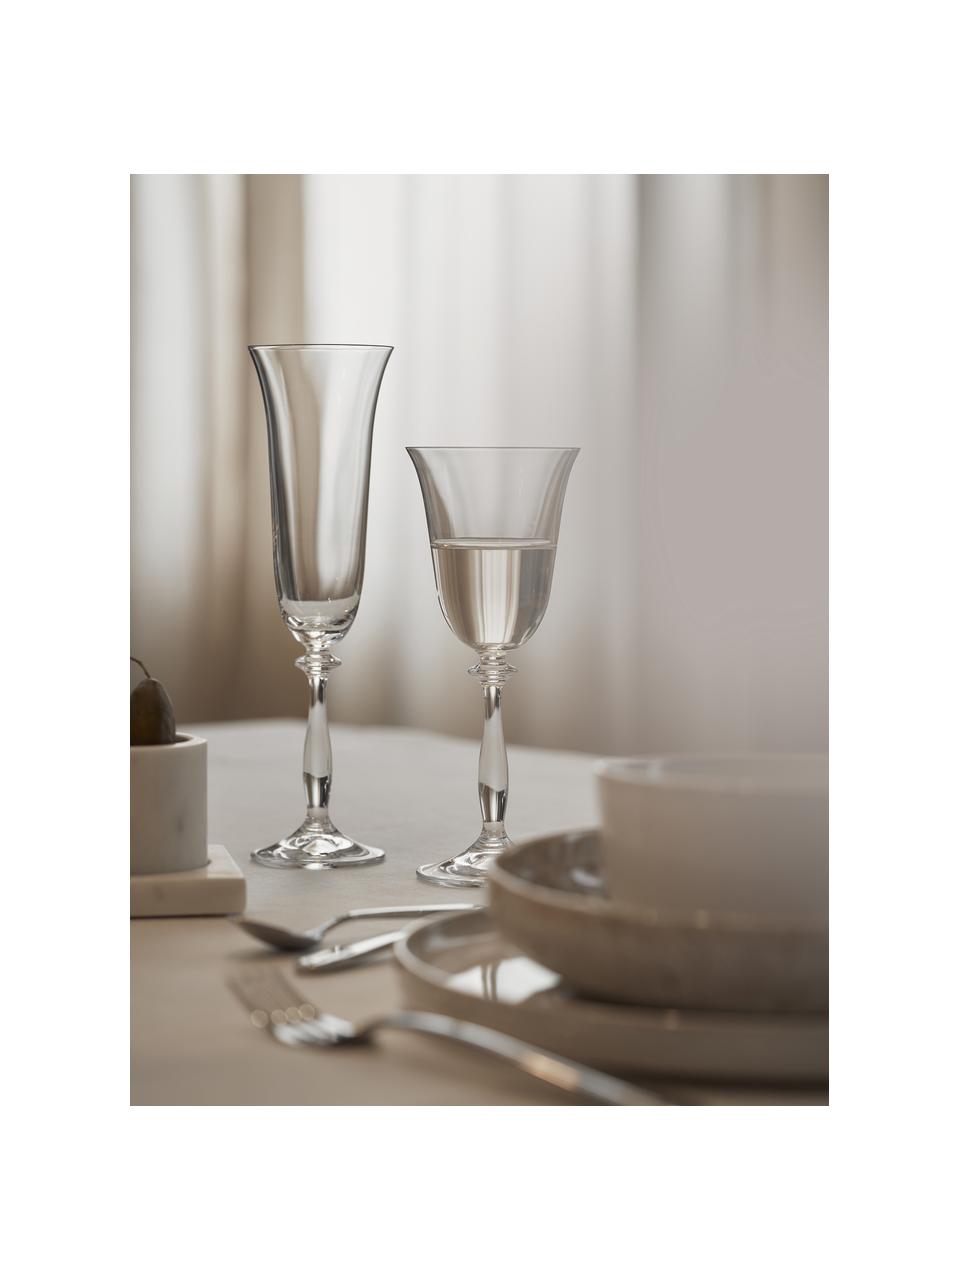 Sklenice na šampaňské, Lacey, 4 ks, Křišťálové sklo, Transparentní, Ø 8 cm, V 20 cm, 190 ml